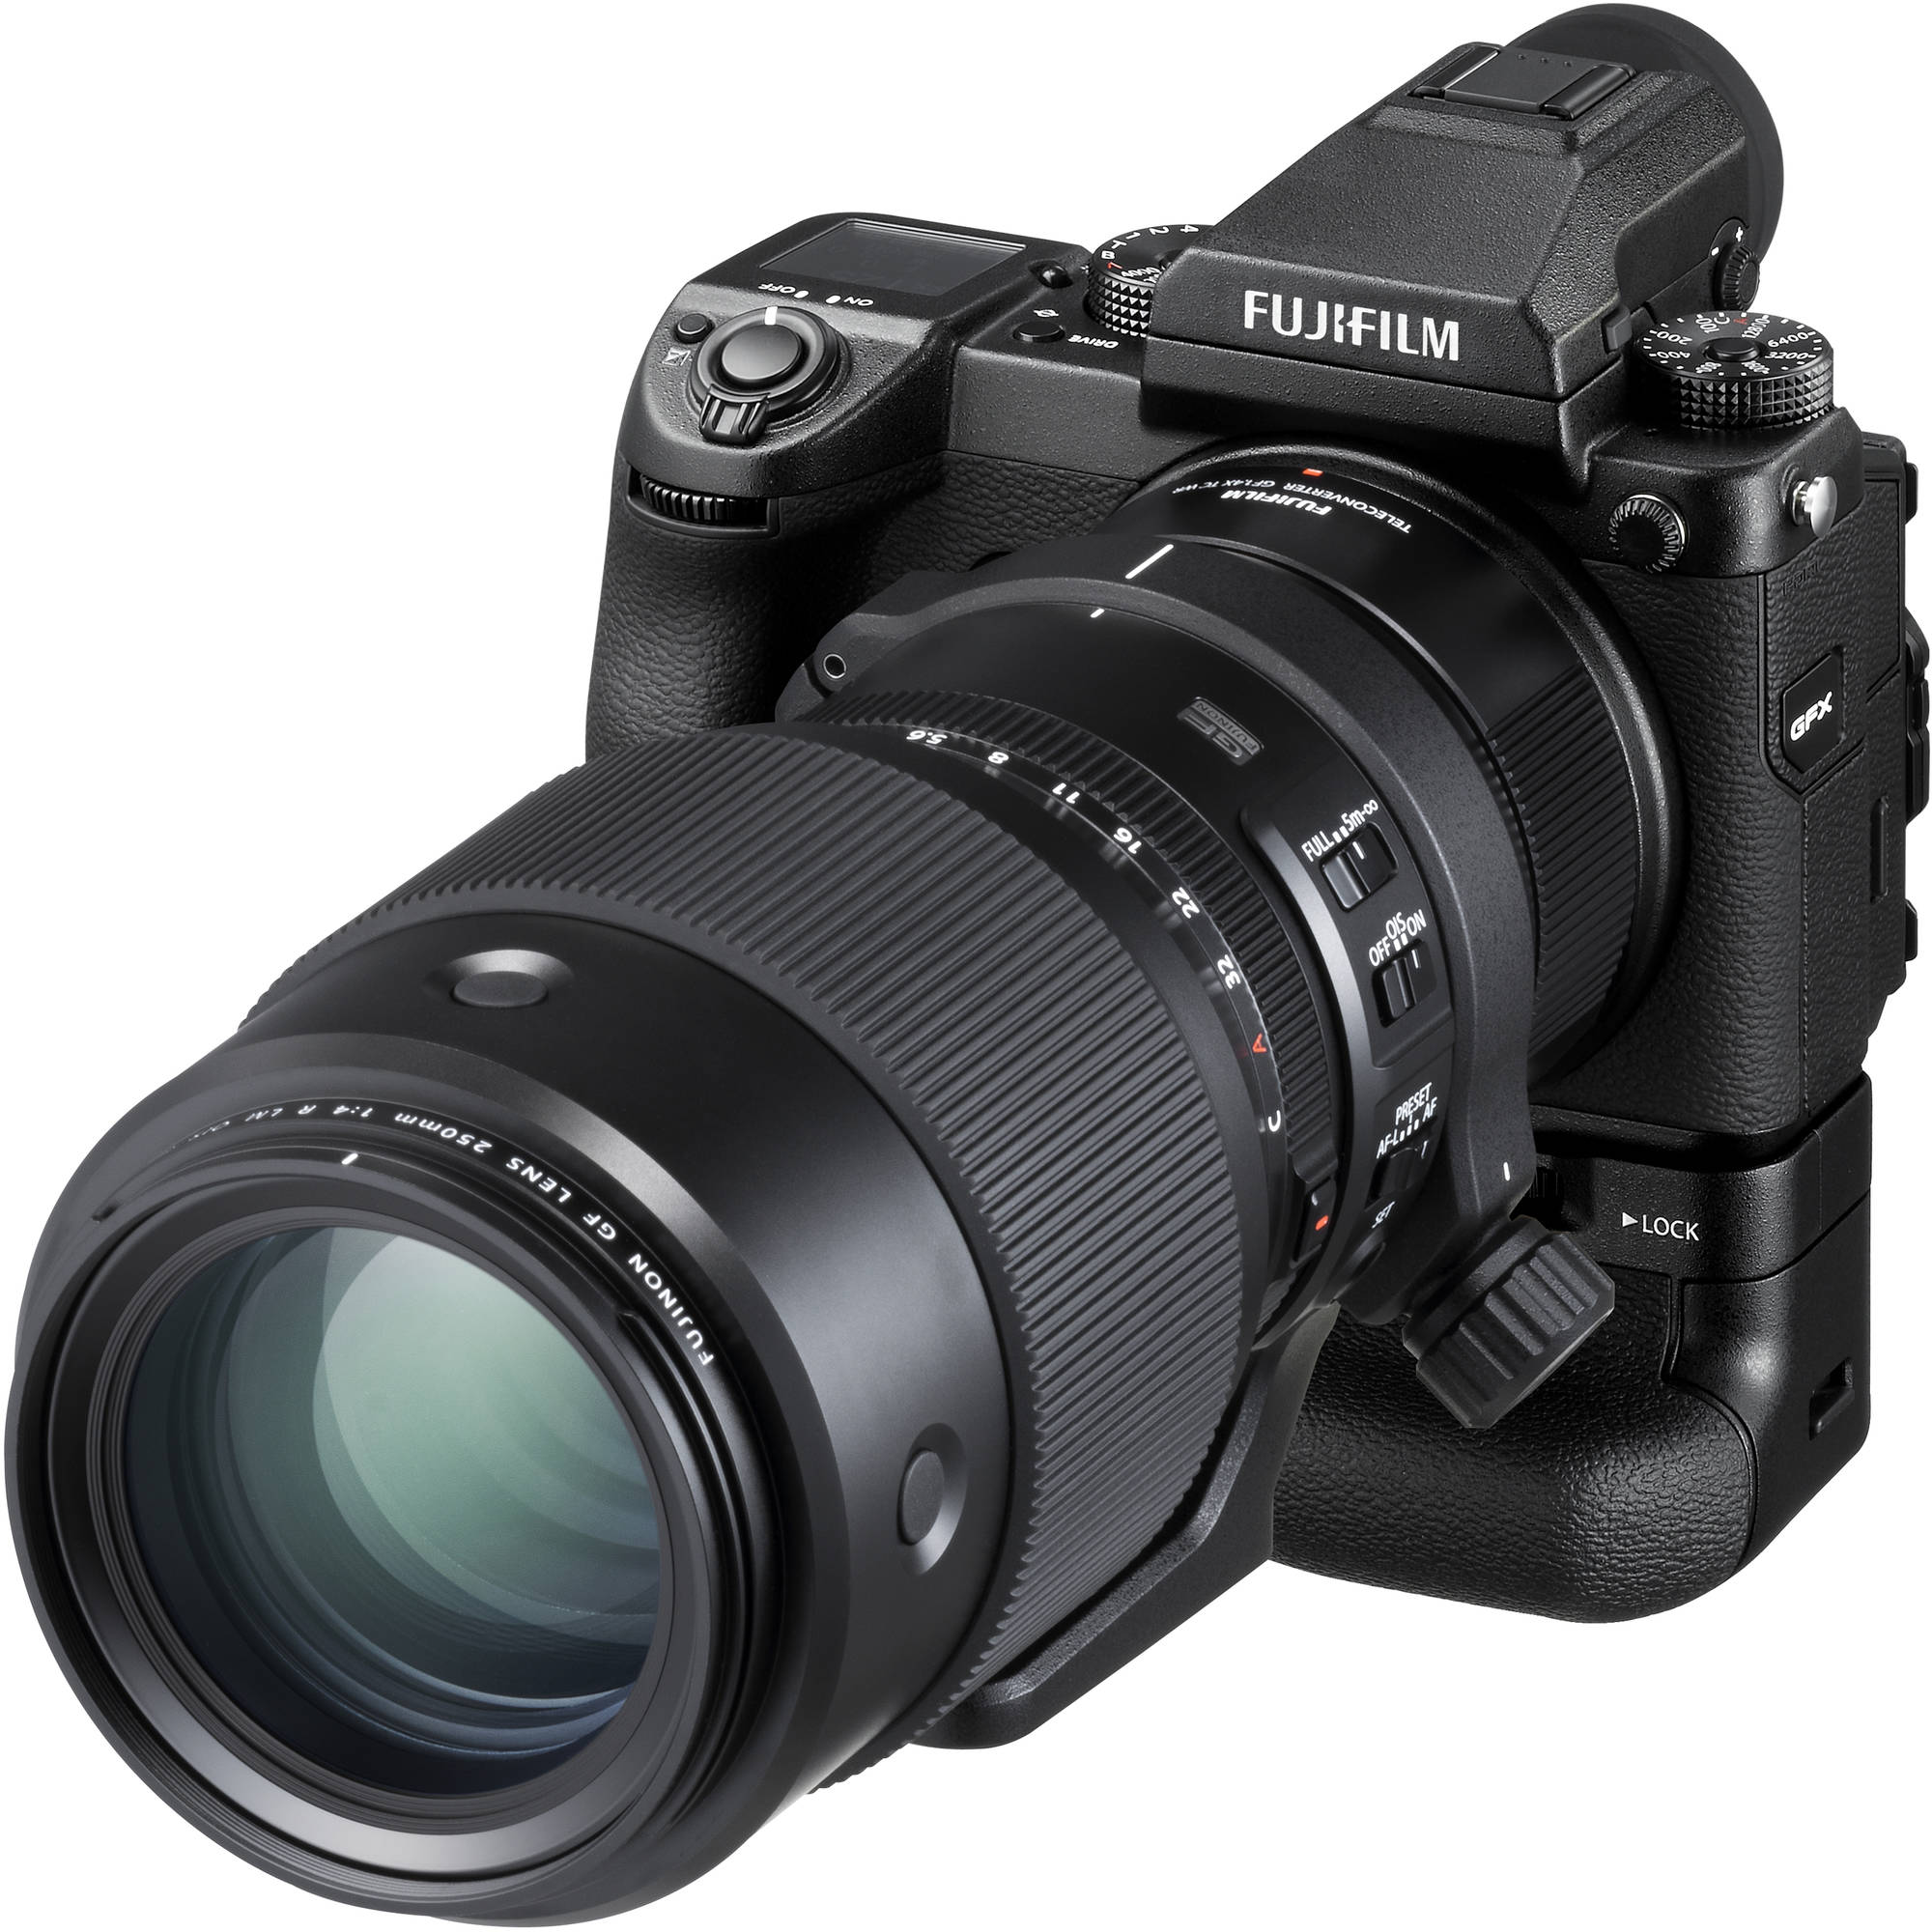 Fujifilm GF 1.4x TC WR Tele Converter pour les objectifs GF 250 mm et GF 100-200 mm